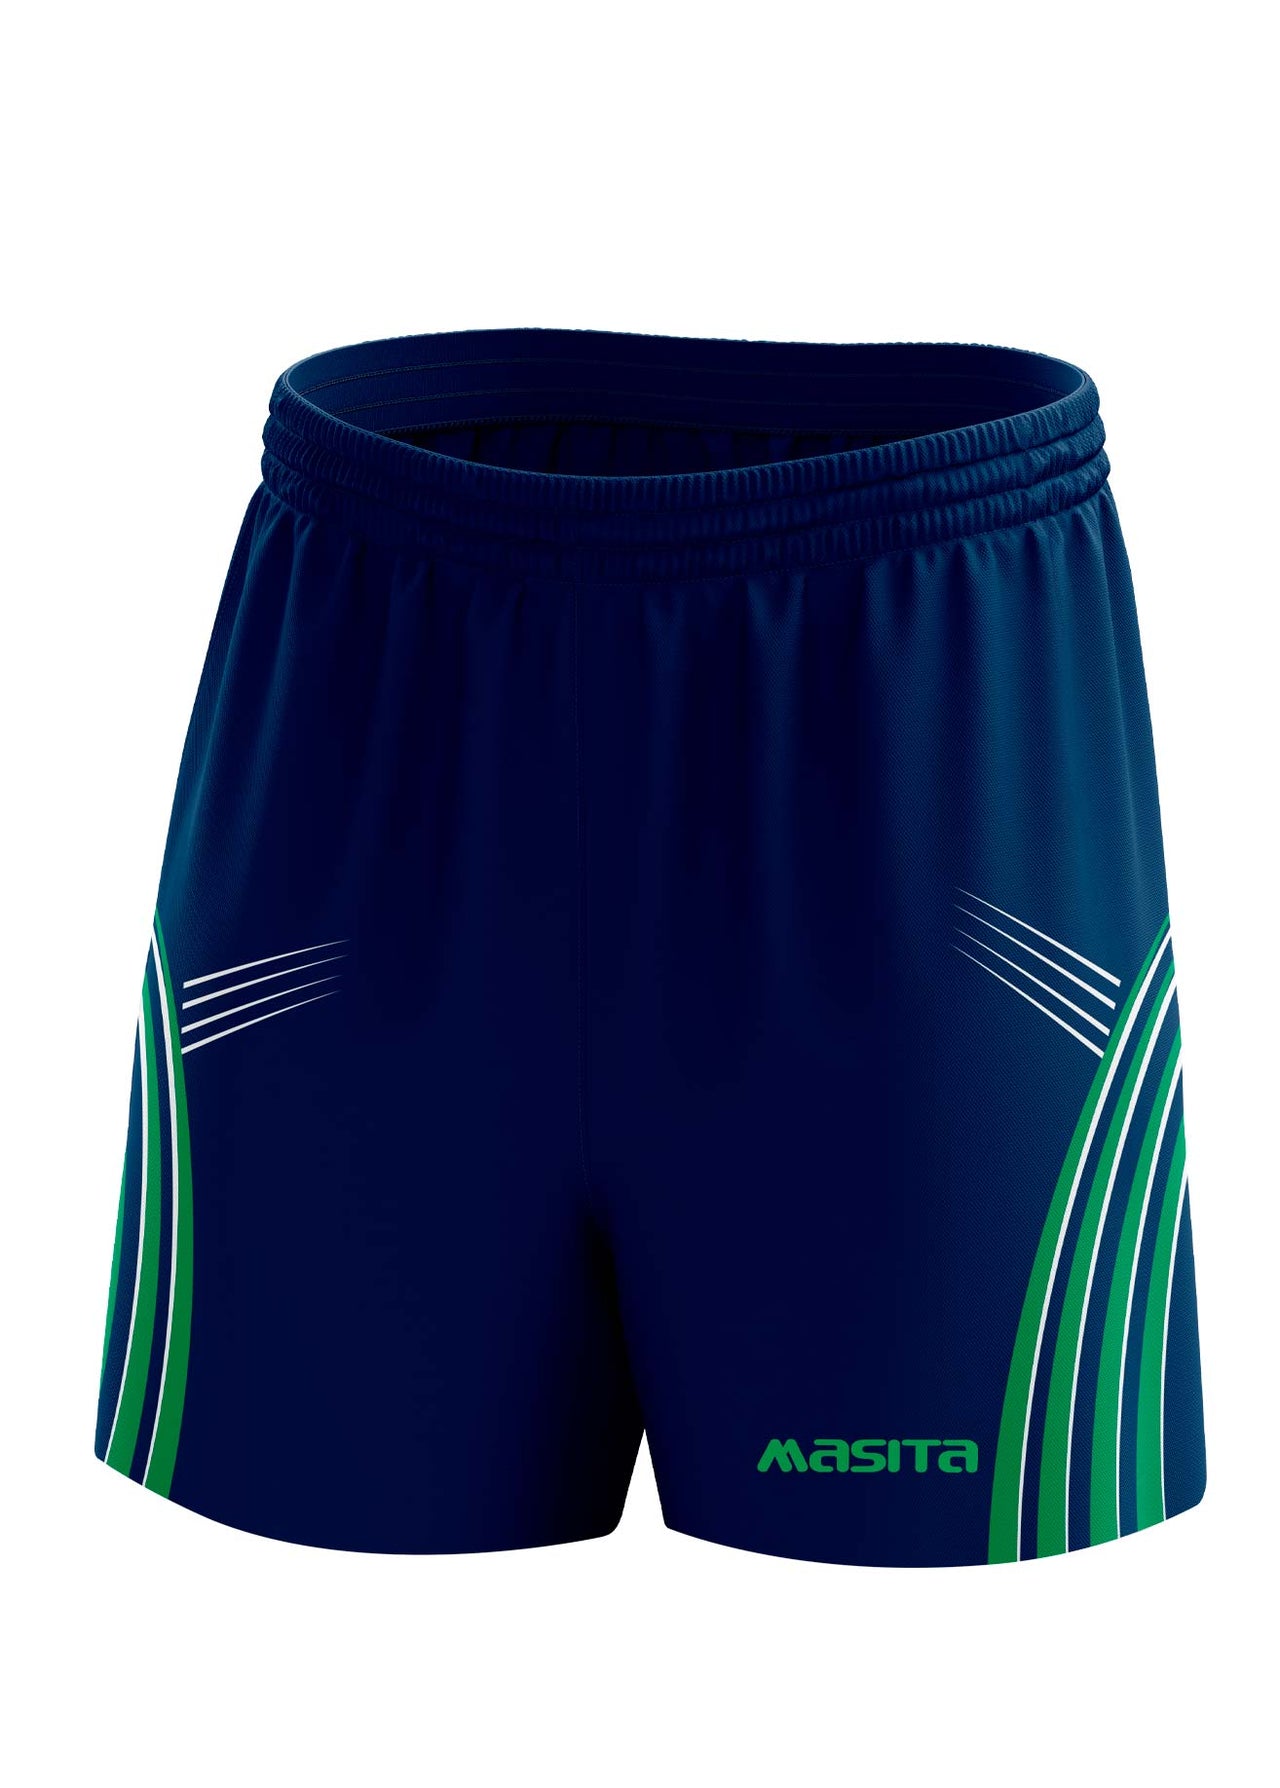 Casey Gaelic Shorts Navy/Green/White Adult